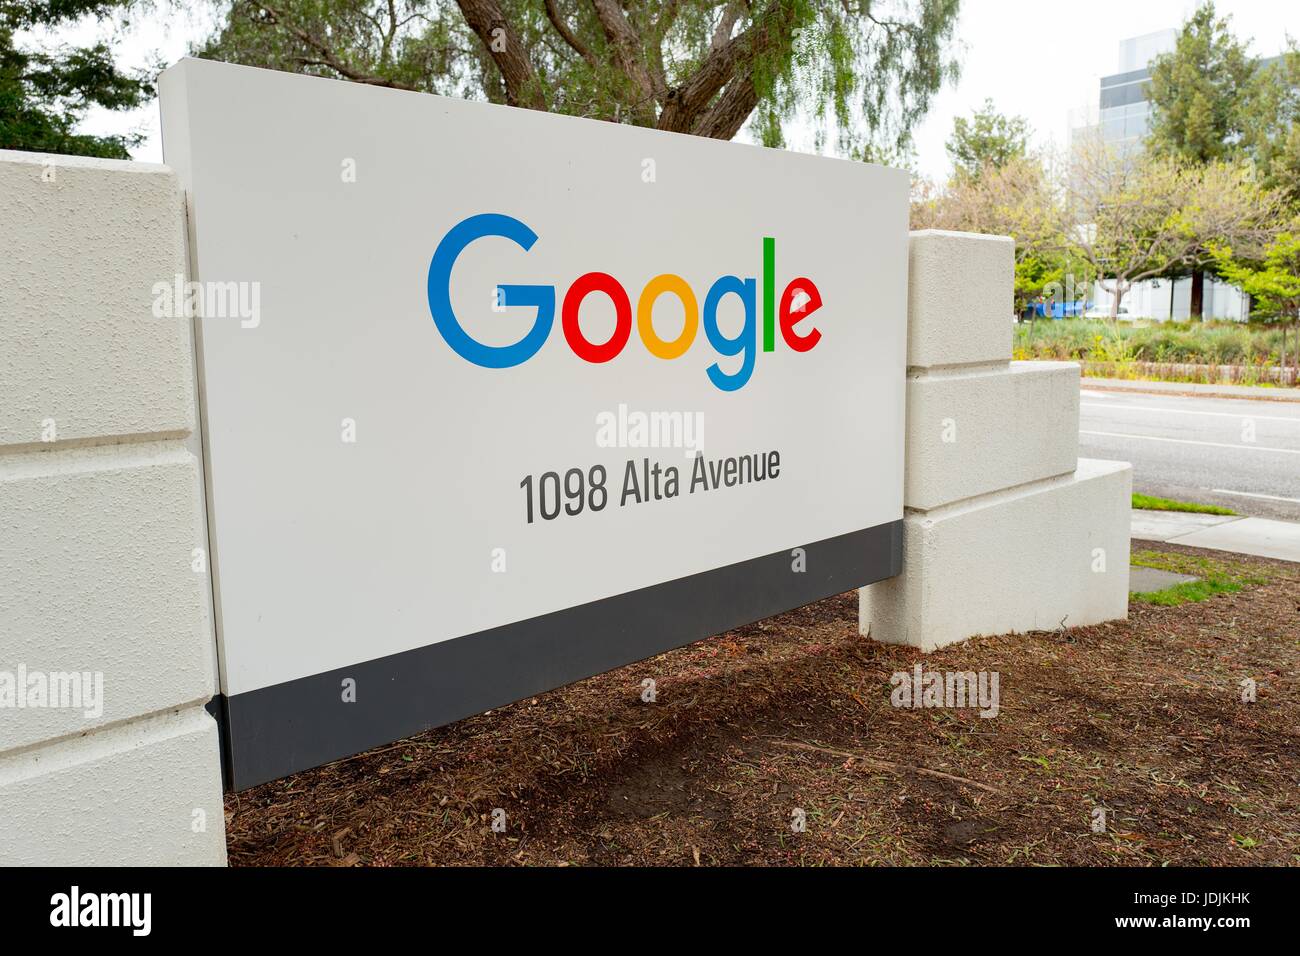 La signalisation pour Google Inc au Googleplex, le siège de la Silicon Valley et de la technologie du moteur de recherche Google Inc, Mountain View, Californie, le 7 avril 2017. Banque D'Images